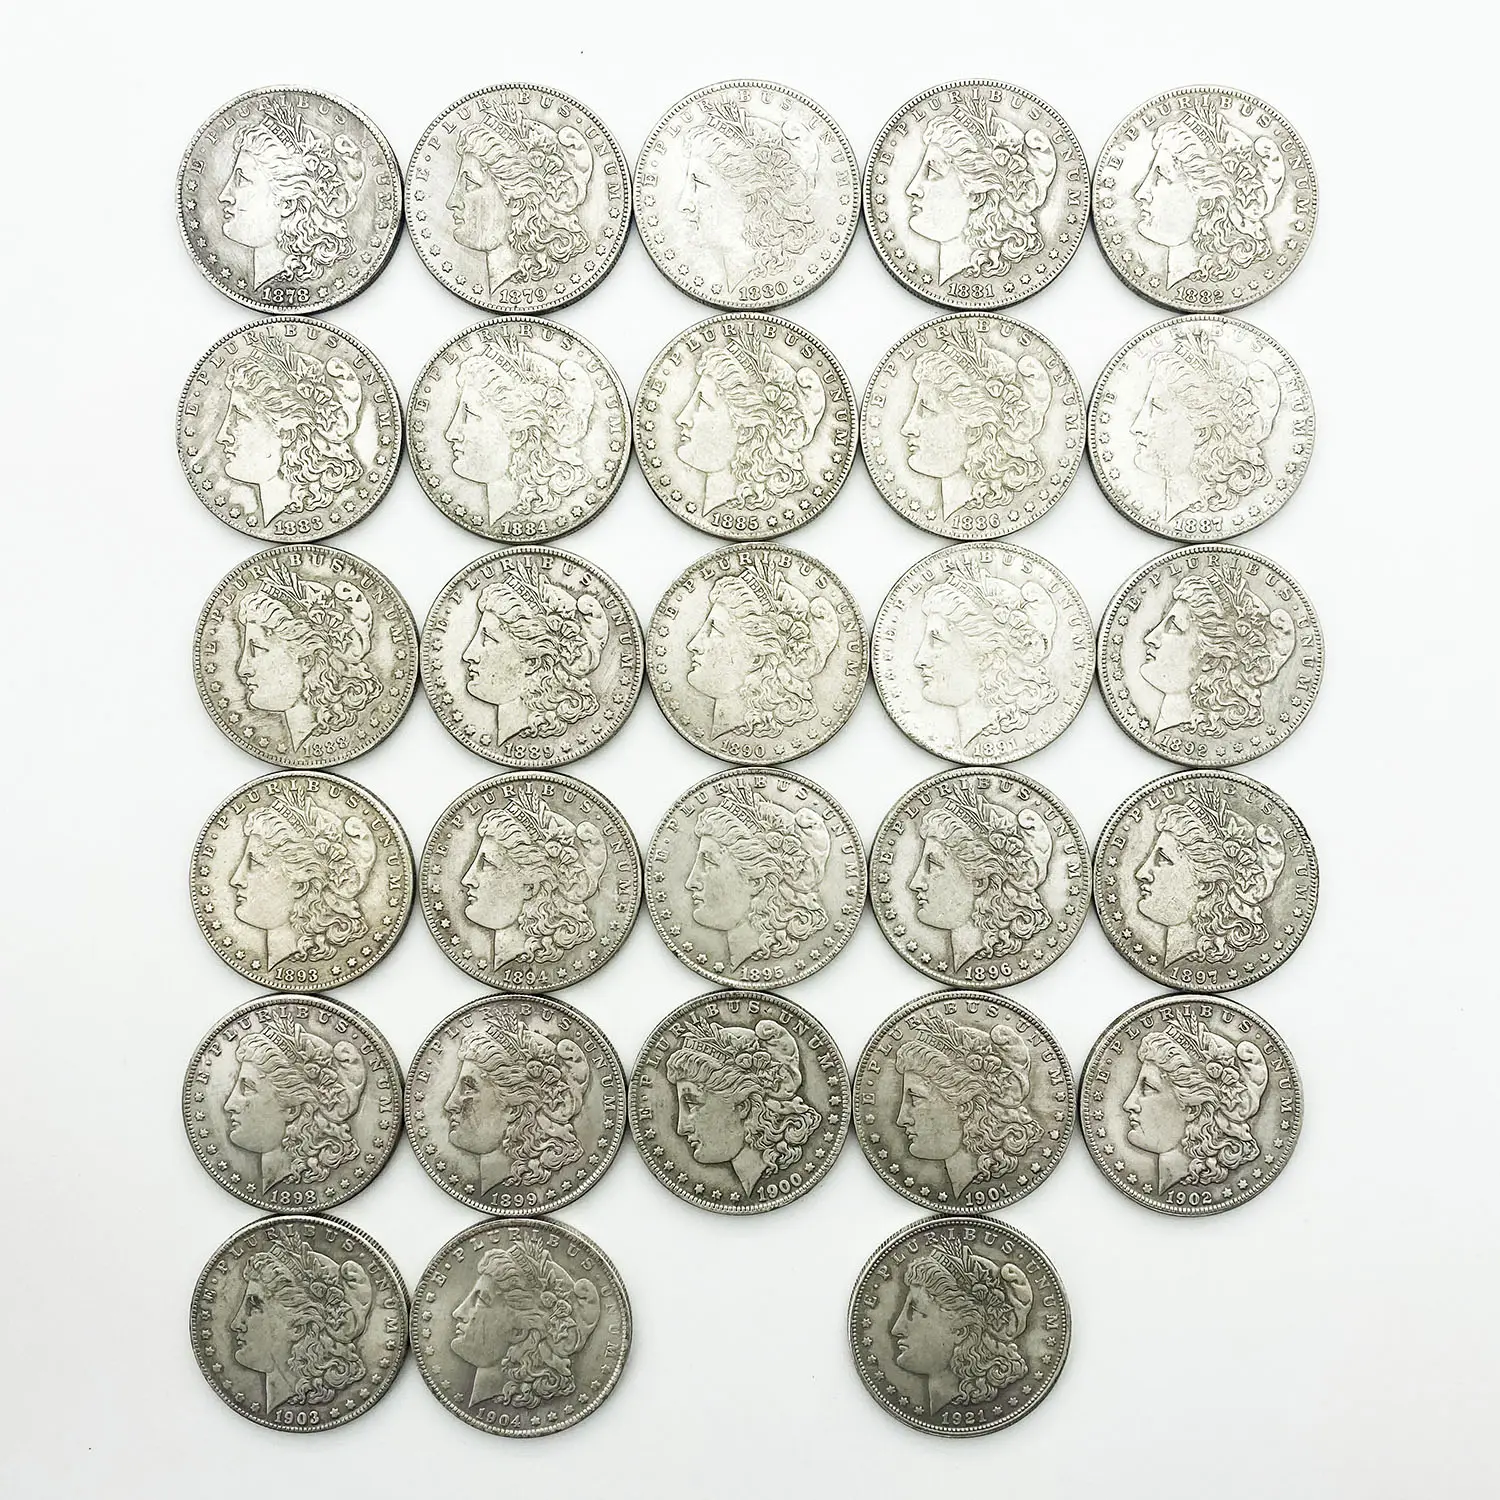 Réplique de pièces de monnaie hobo morgan, laiton plaqué argent, métal de collection américaine et ancienne américaine, 1878 ~ 1895 ~ 1904 et 1921, 28 pièces